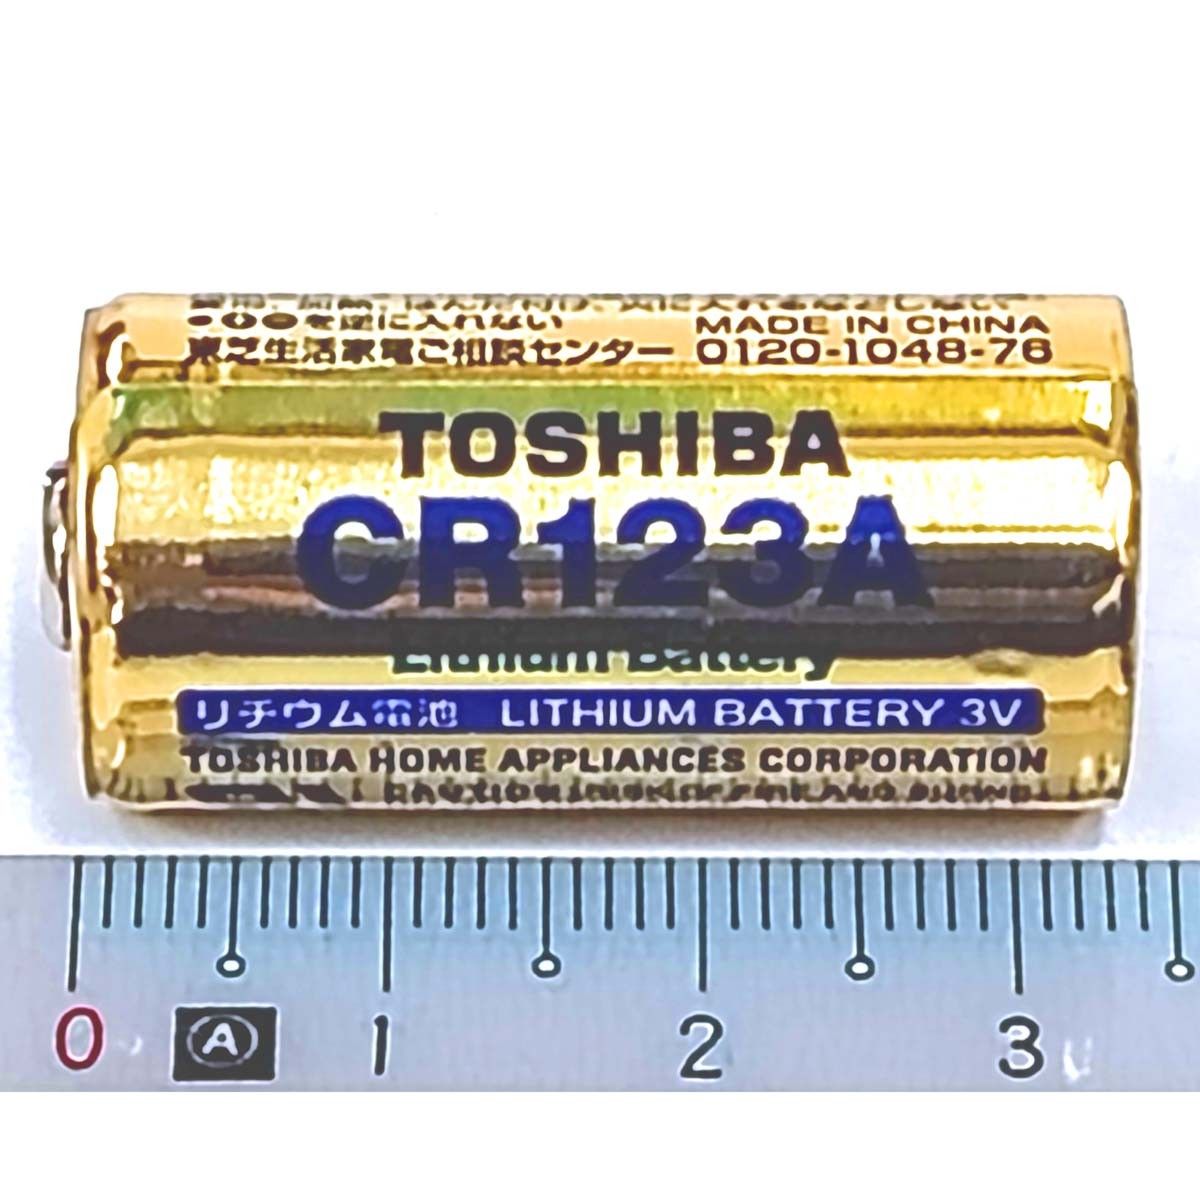 CR123A リチウム電池【1個】3V 東芝 TOSHIBA CR123AG 円筒形電池 EL123AP DL123A 新品